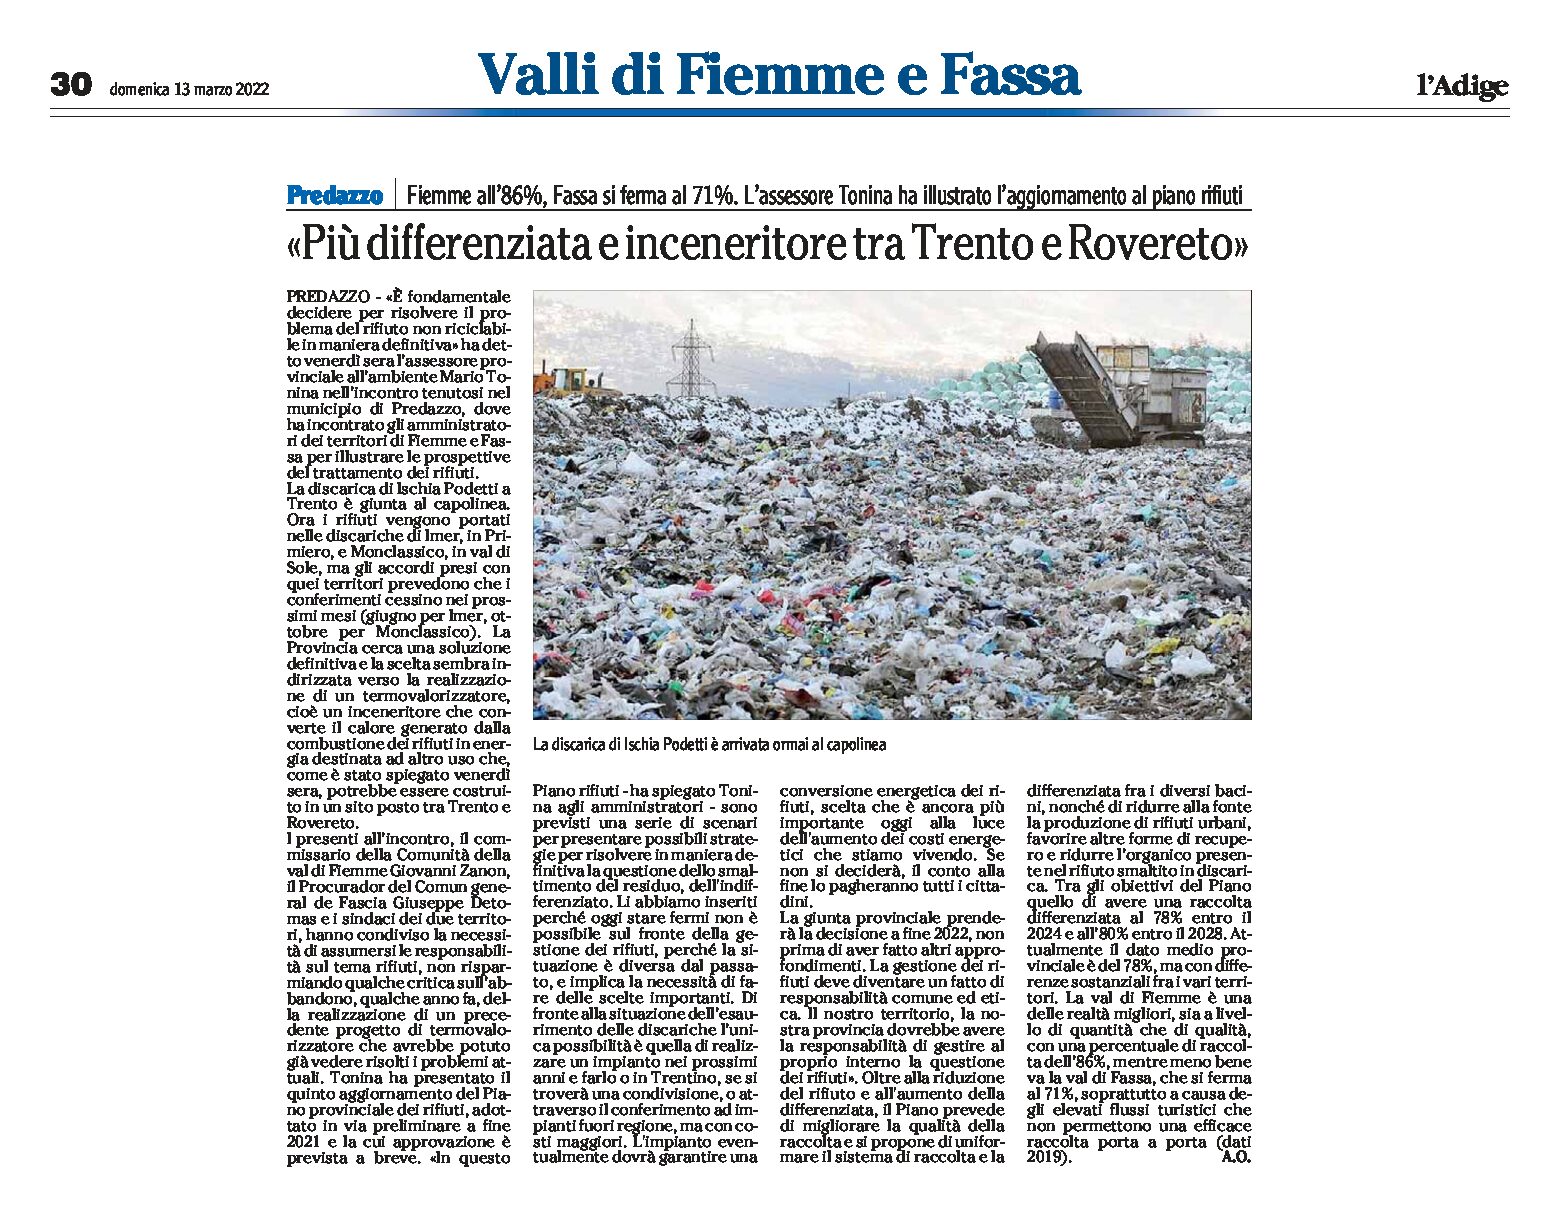 Piano rifiuti: più differenziata e inceneritore tra Trento e Rovereto